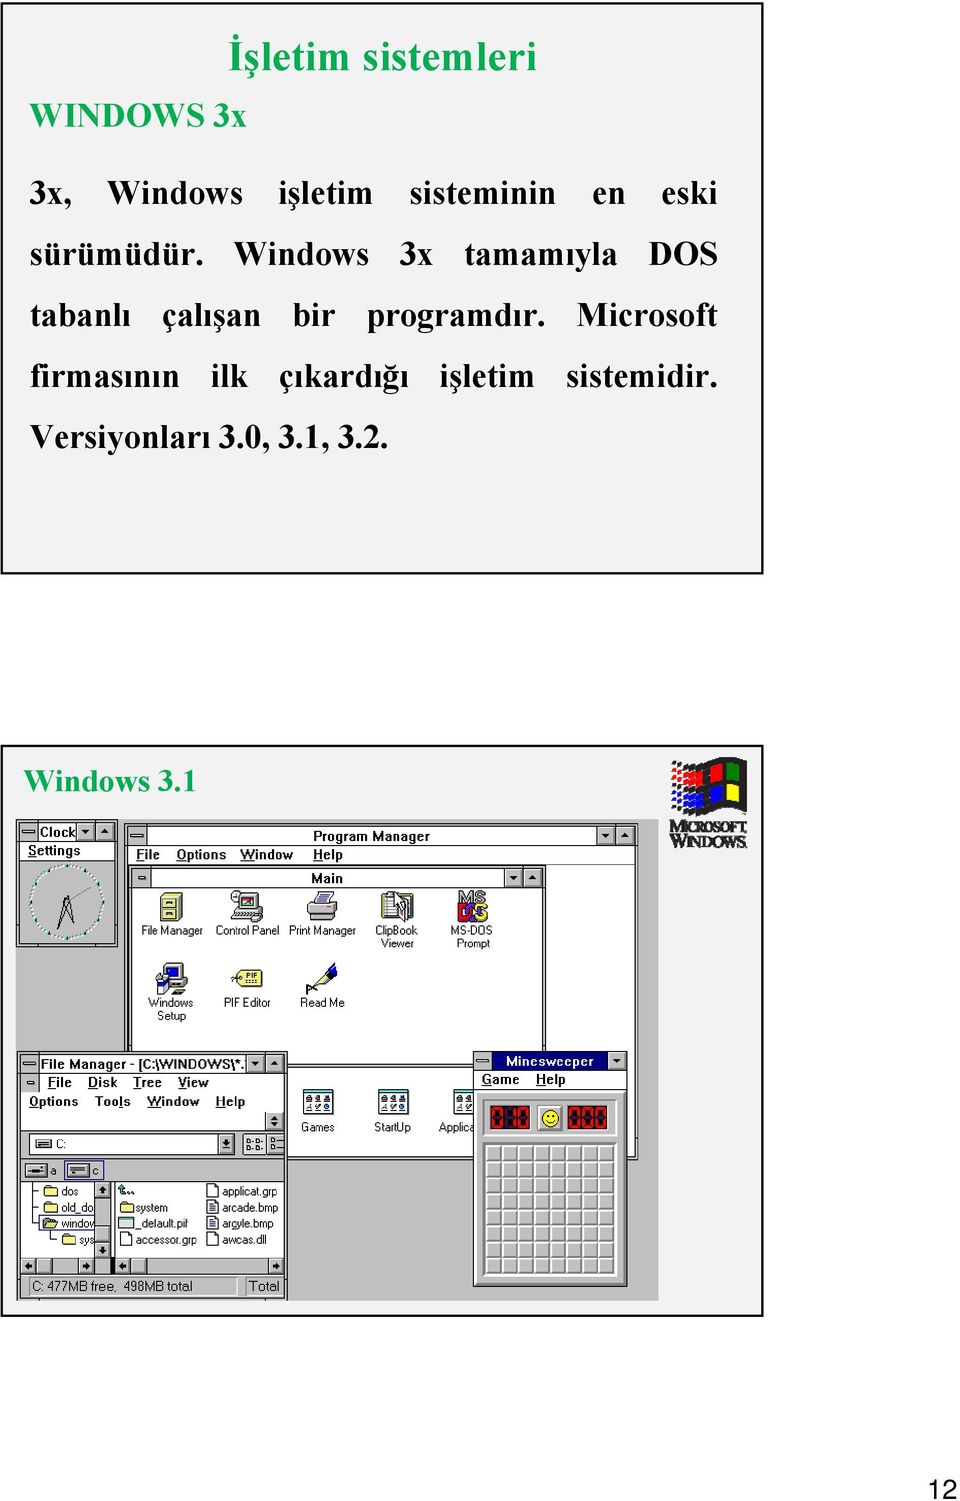 Windows 3x tamamıyla DOS tabanlı çalışan bir programdır.